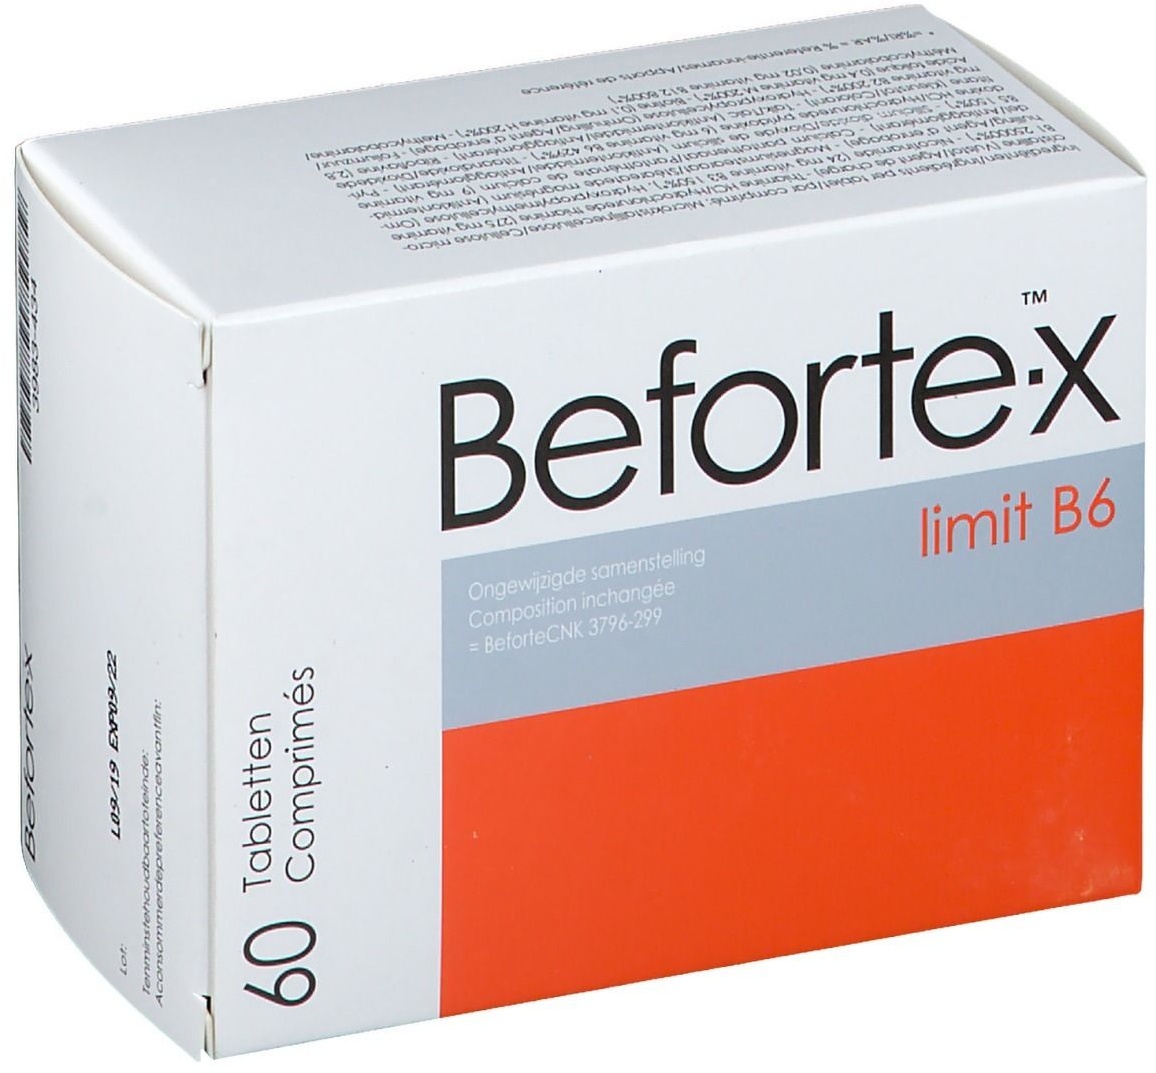 Befortex limit B6 60 pc(s) comprimé(s)